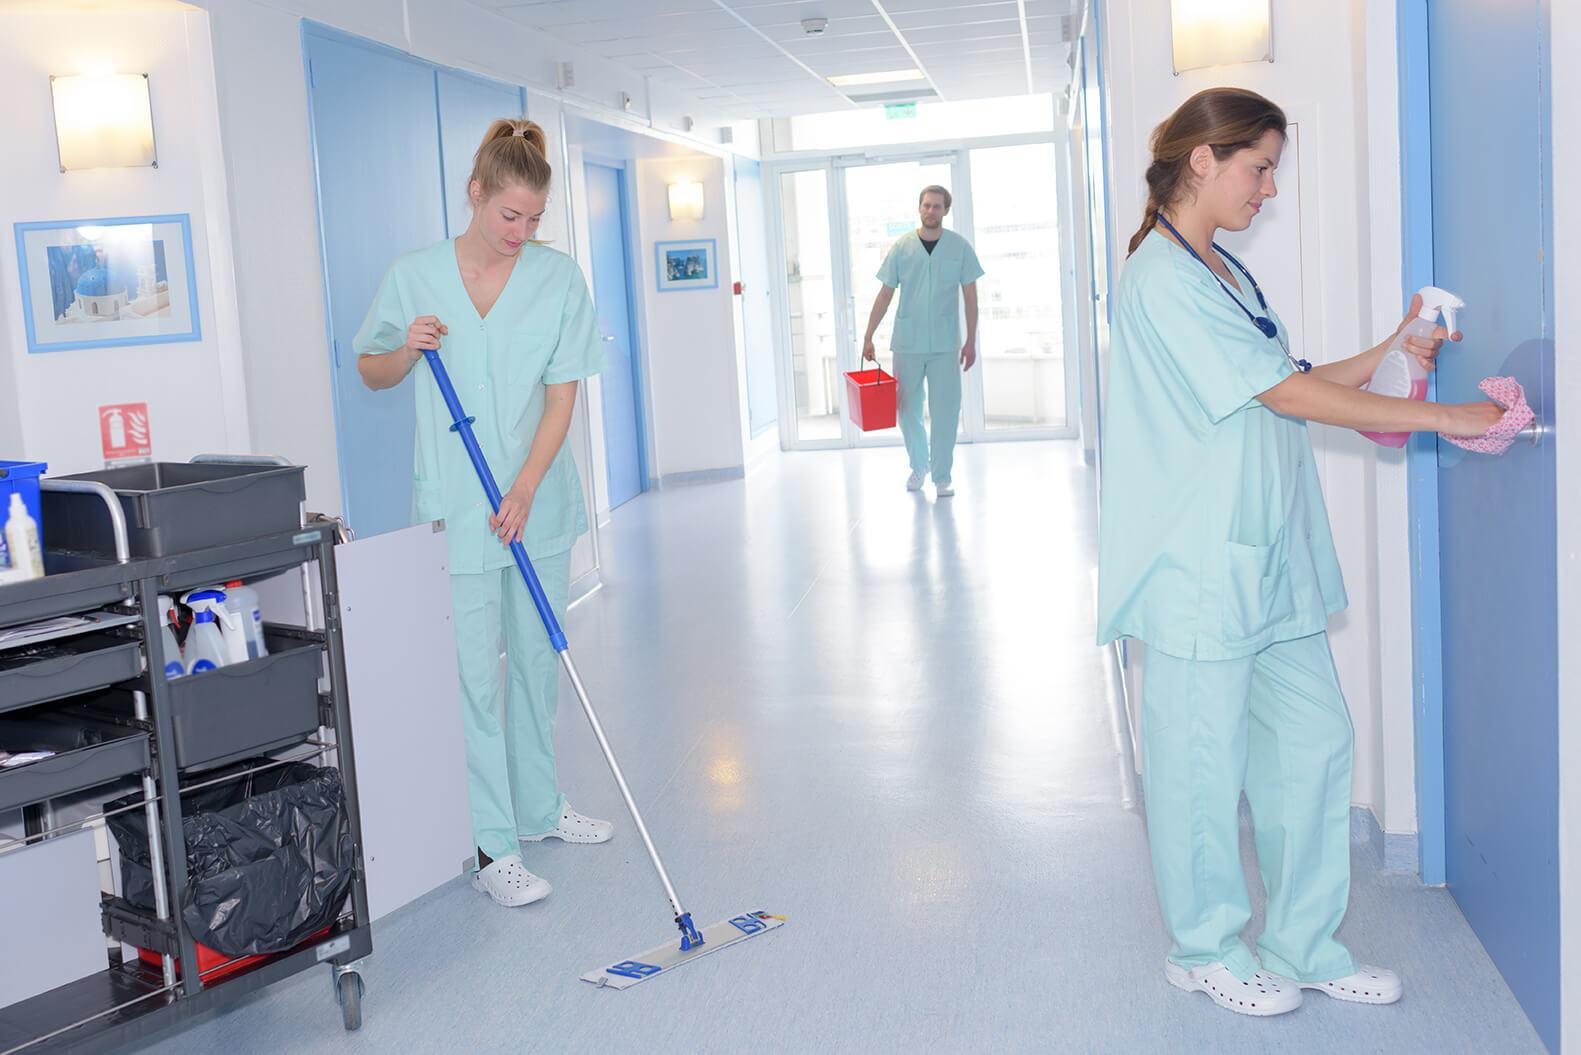 EVS staff cleaning floors, disinfecting door handles in hospital